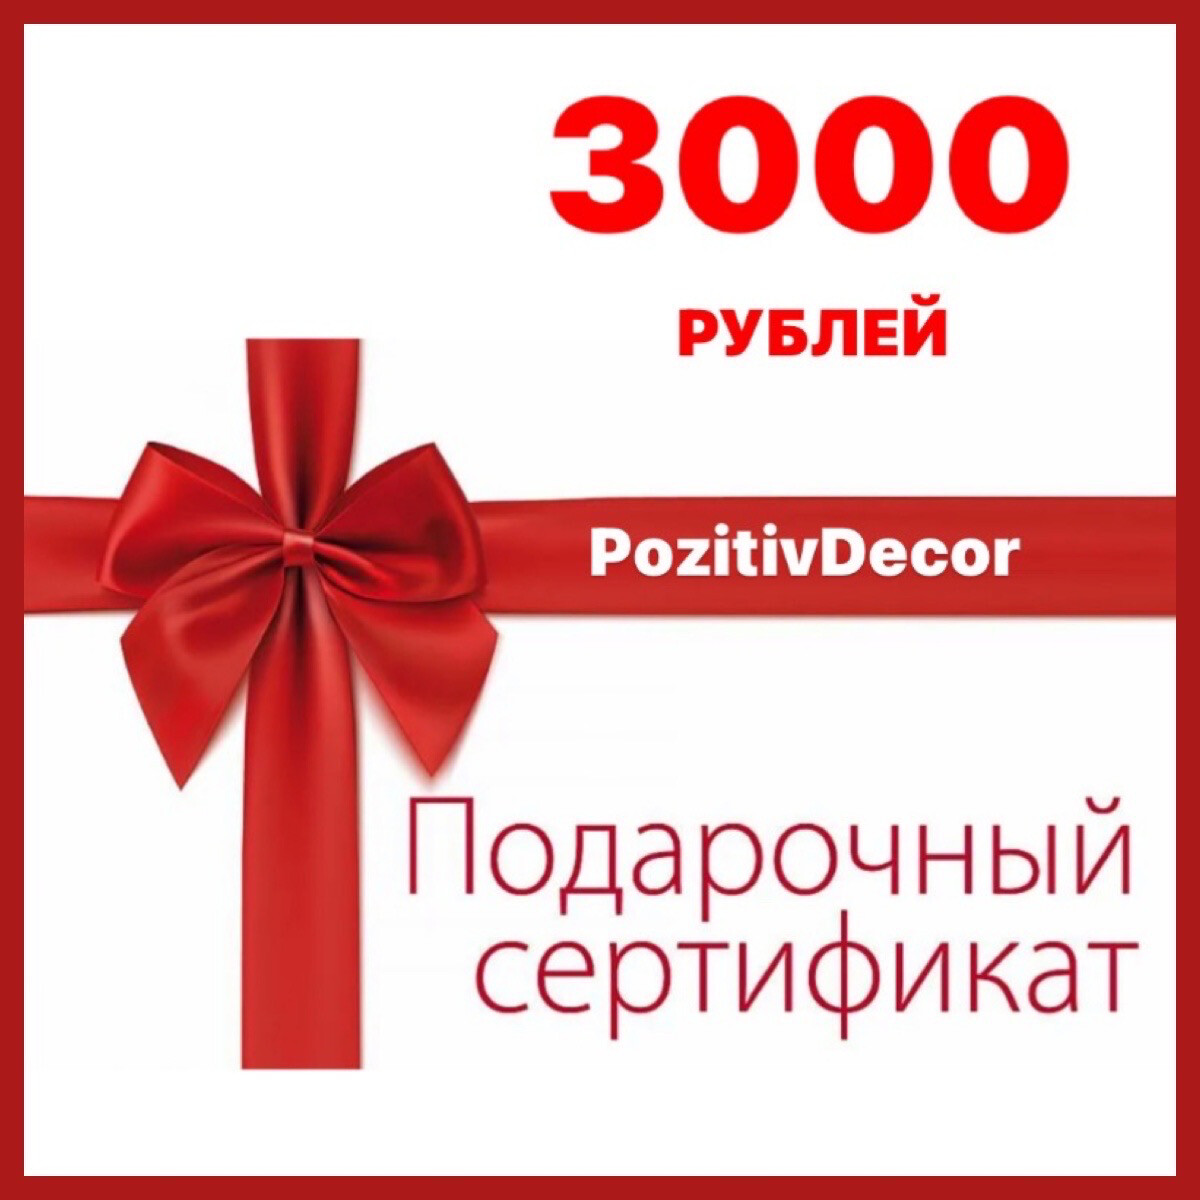 ПОДАРОЧНЫЙ СЕРТИФИКАТ - 3000 рублей